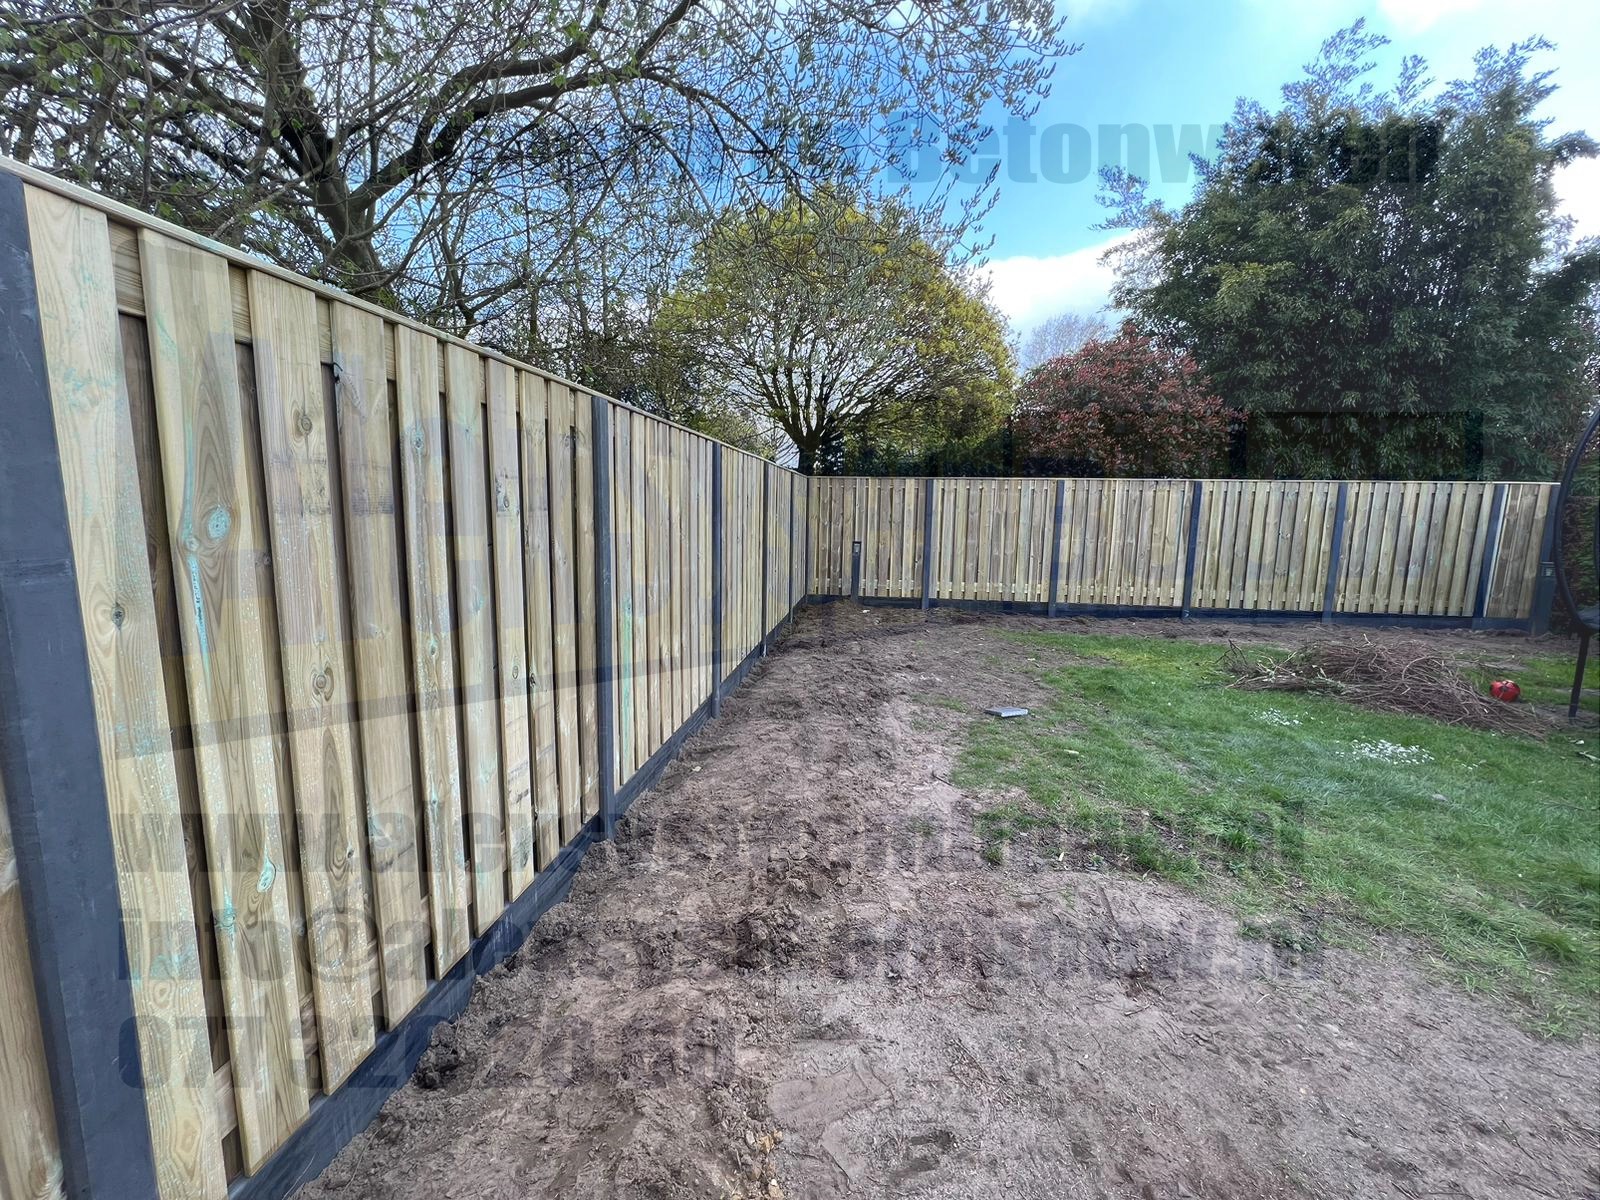 21 planks grenen tuinschermen i.c.m. antracieten beton palen met vlakke kop en doorlopende sponning